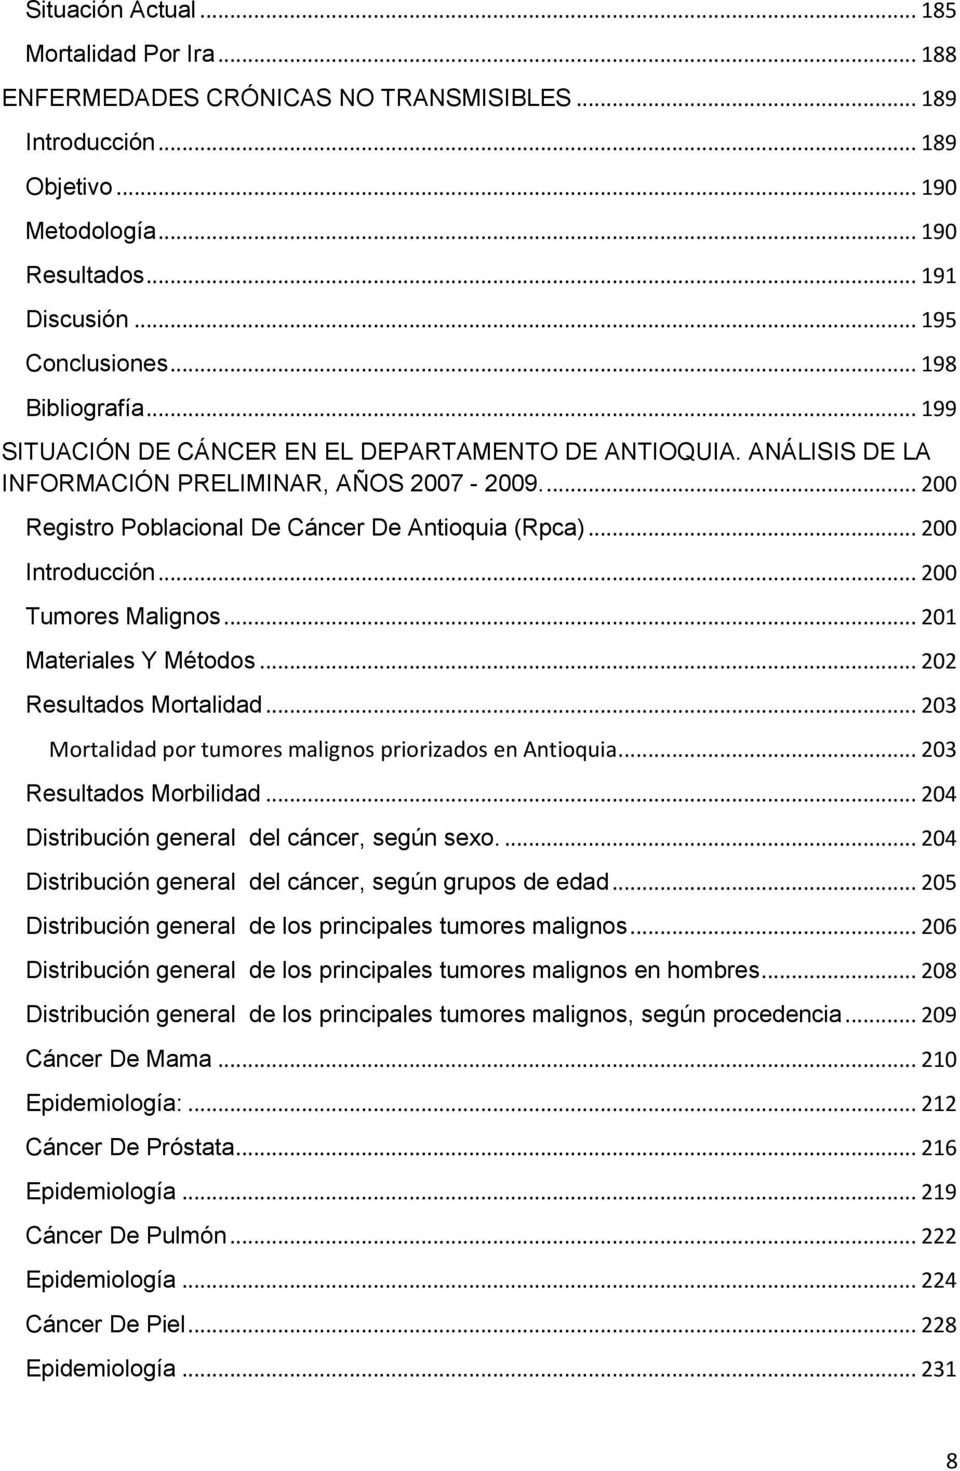 .. 200 Introducción... 200 Tumores Malignos... 201 Materiales Y Métodos... 202 Resultados Mortalidad... 203 Mortalidad por tumores malignos priorizados en Antioquia... 203 Resultados Morbilidad.